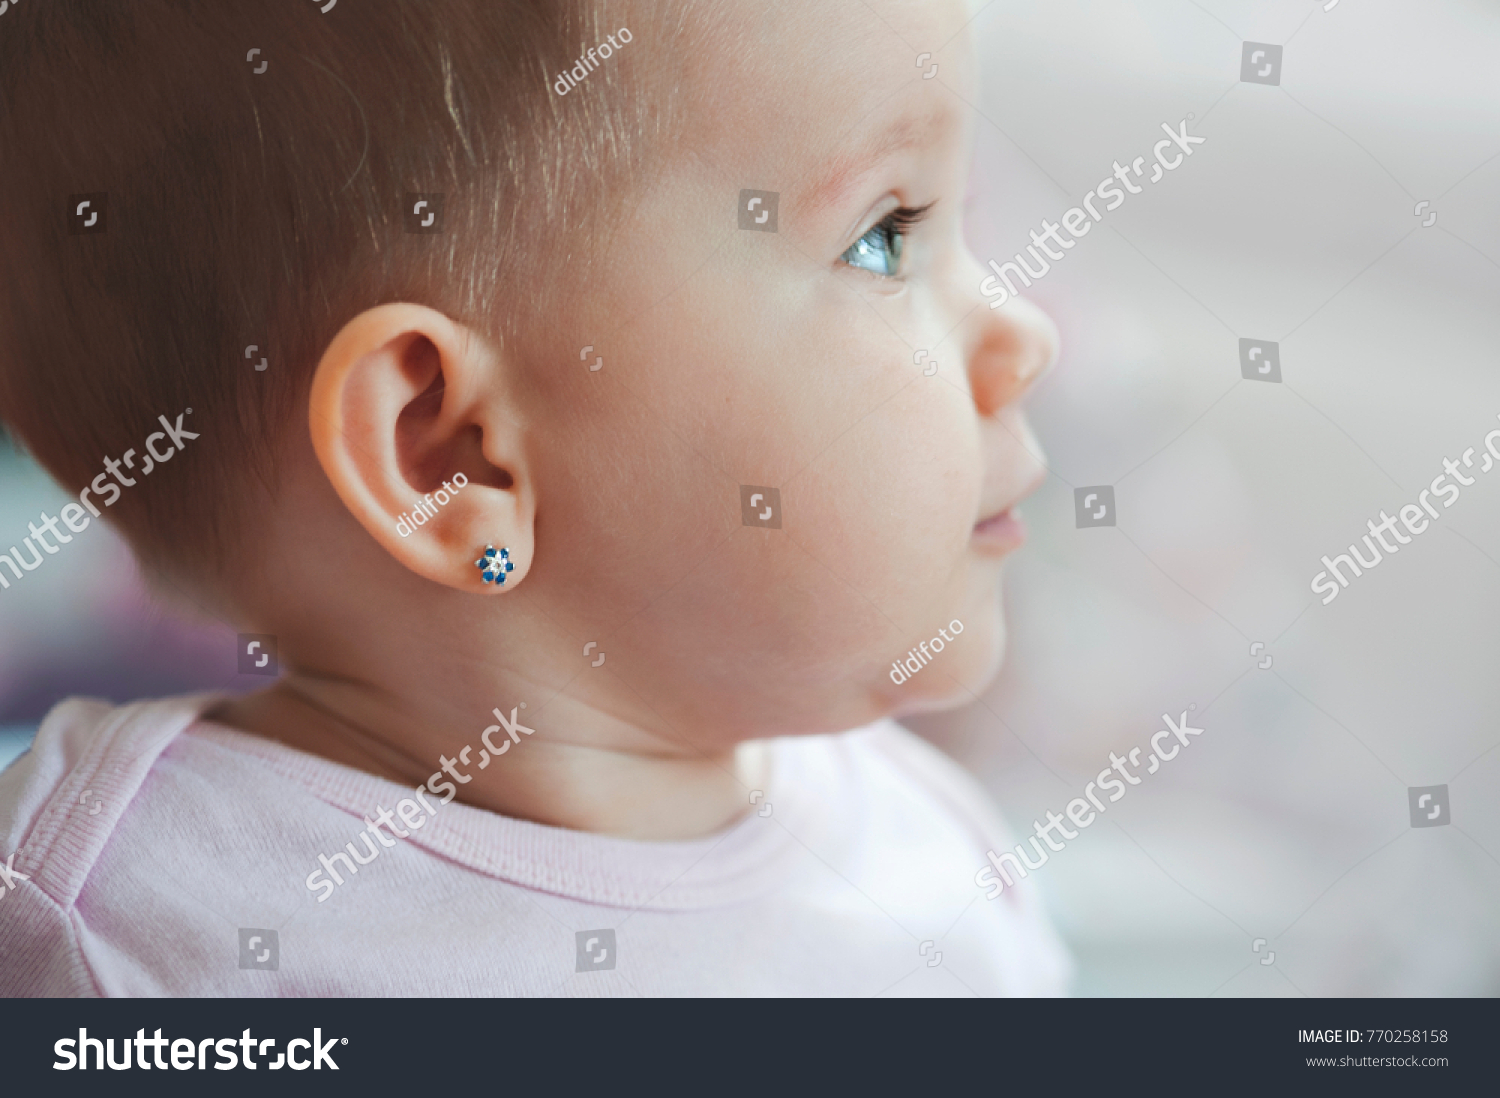 lovely baby face pierced ears star flower earrings blue eyes #770258158